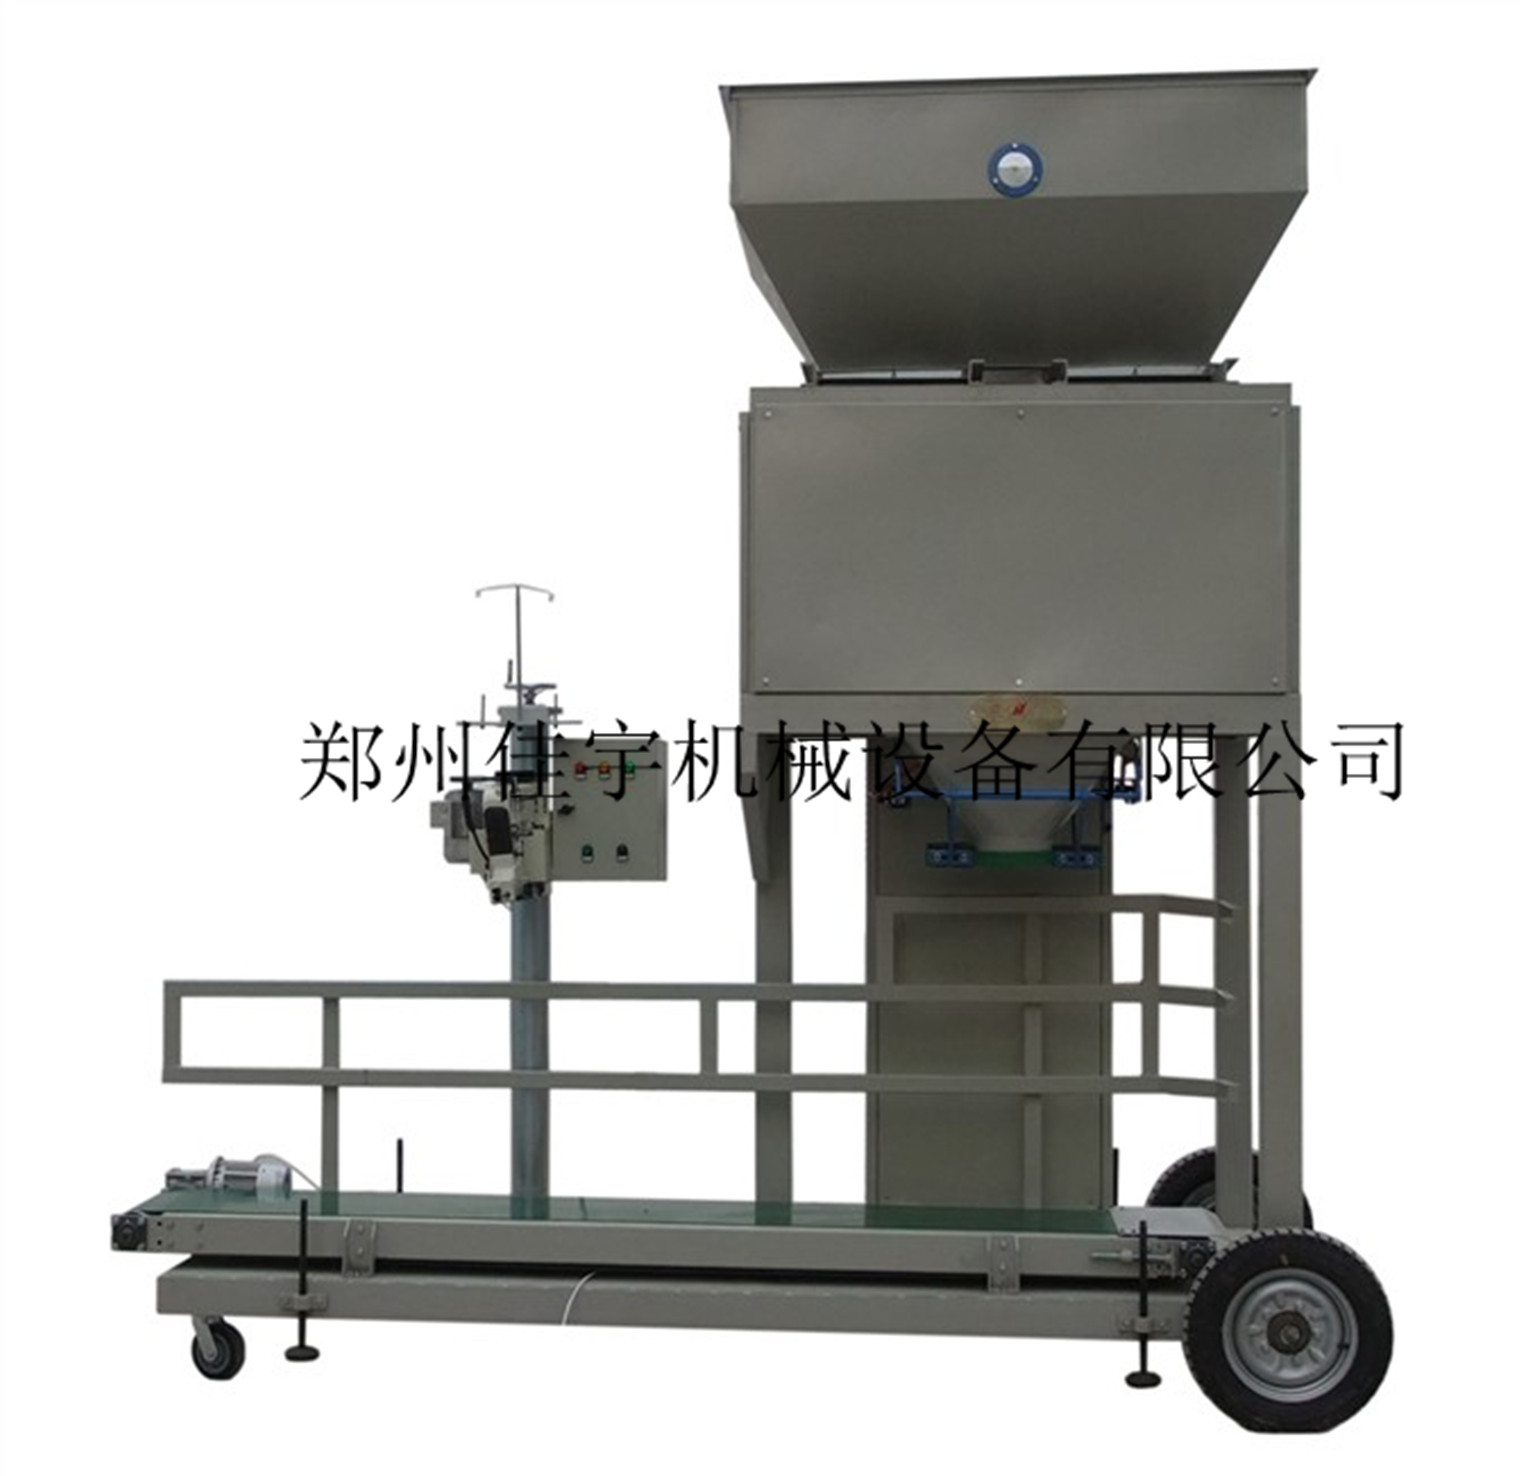 河南郑州专业颗粒包装秤厂颗粒包装机在整个市场的发展中找到了自身价值